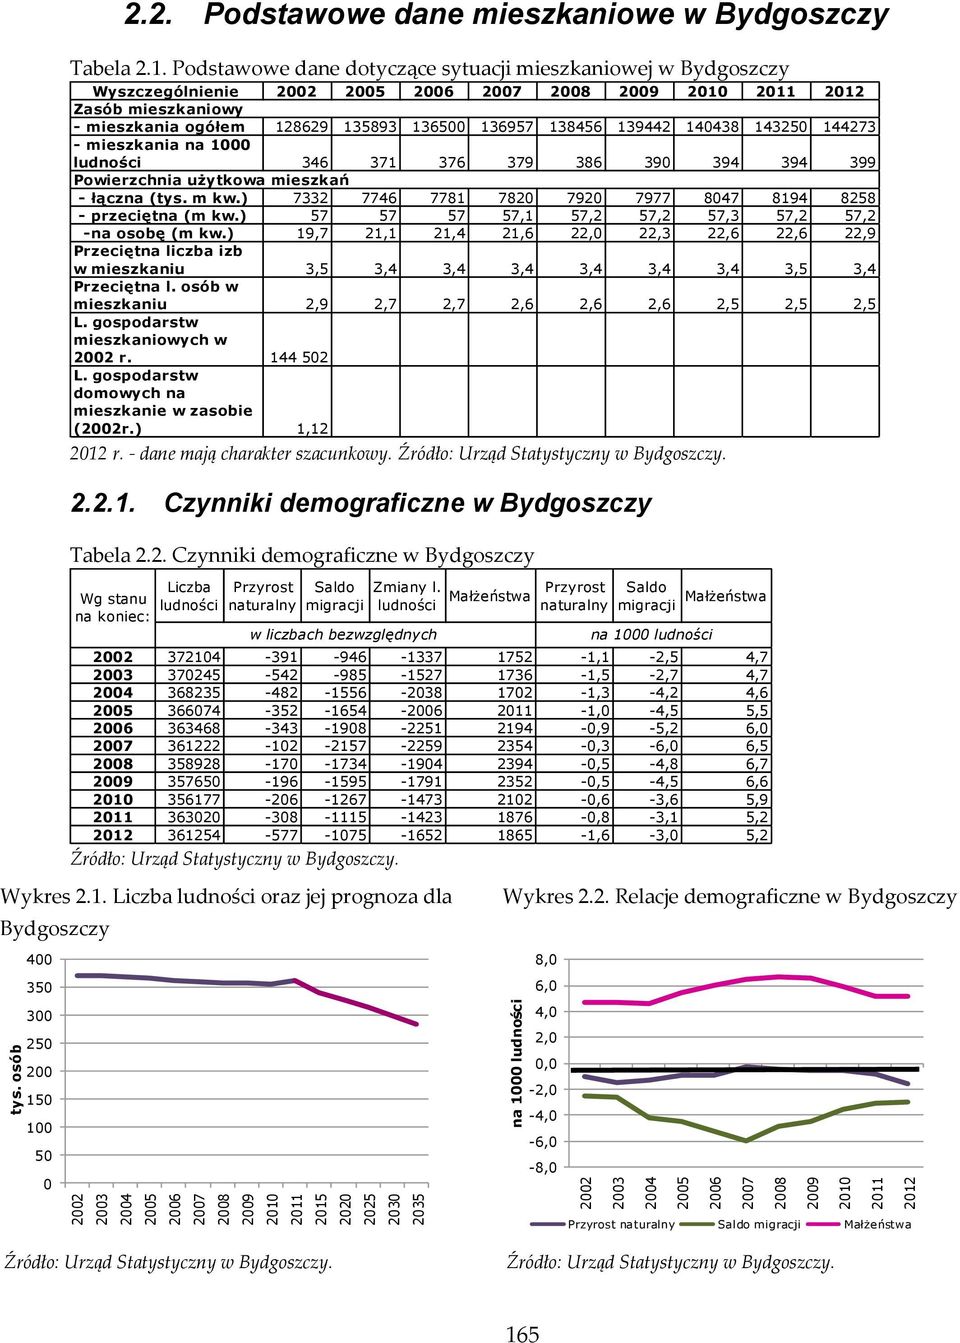 2. Czynniki demograficzne w Bydgoszczy Źródło: Urząd Statystyczny w Bydgoszczy. Wykres 2.1.